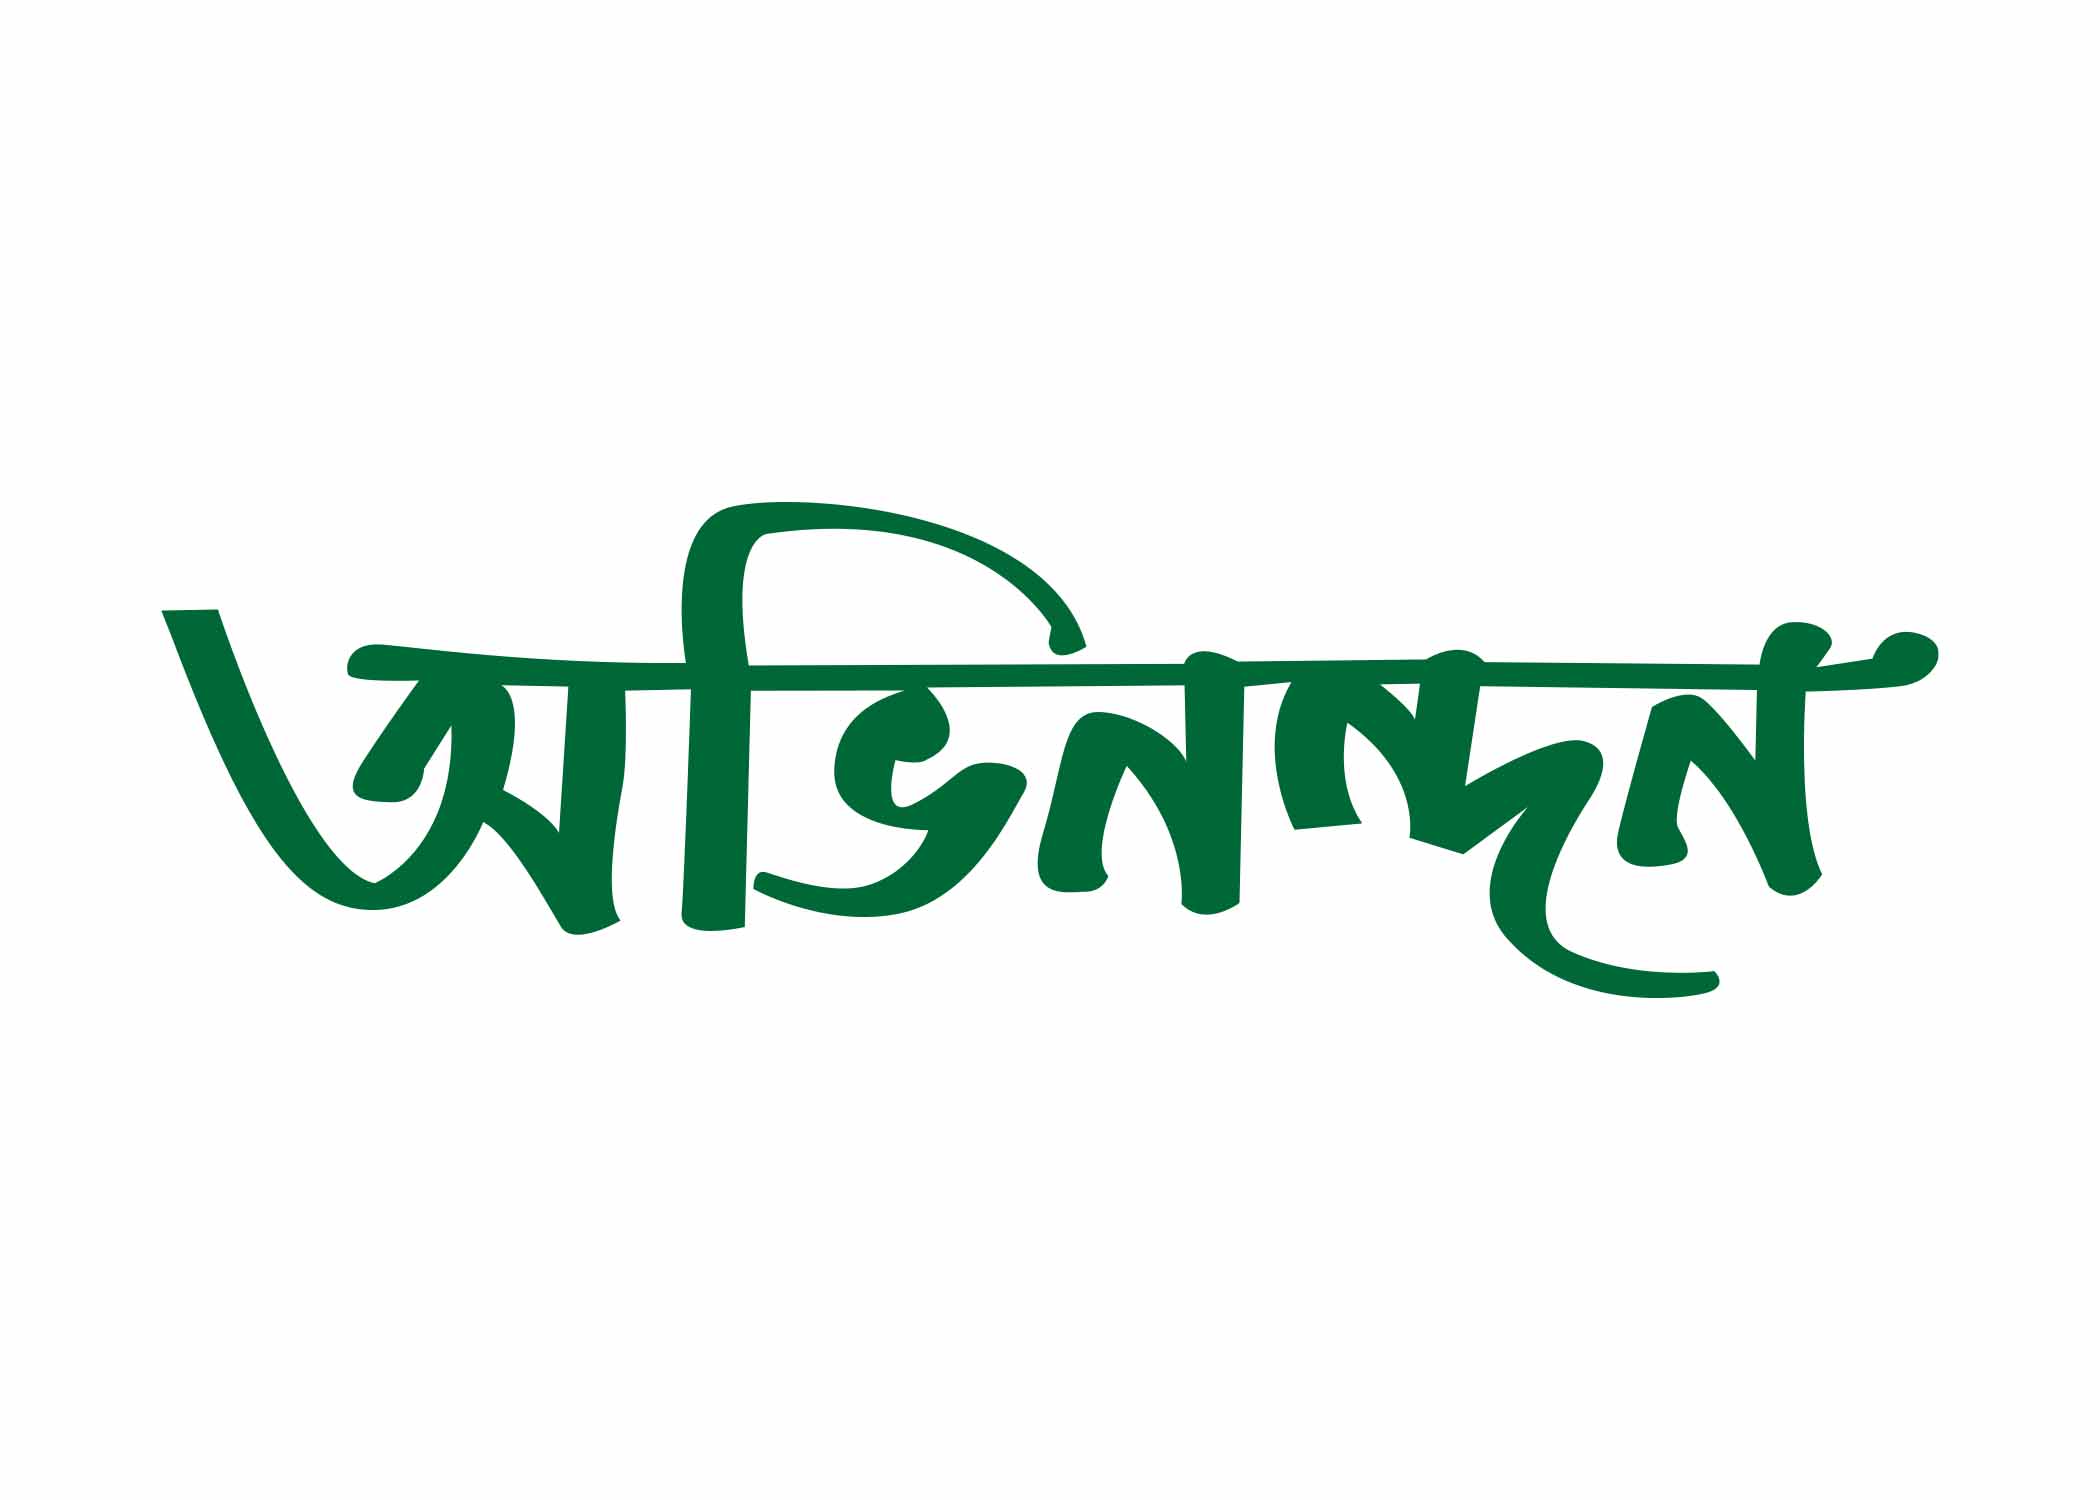 অভিনন্দন টাইপোগ্রাফি । Bangla Typhography PNG